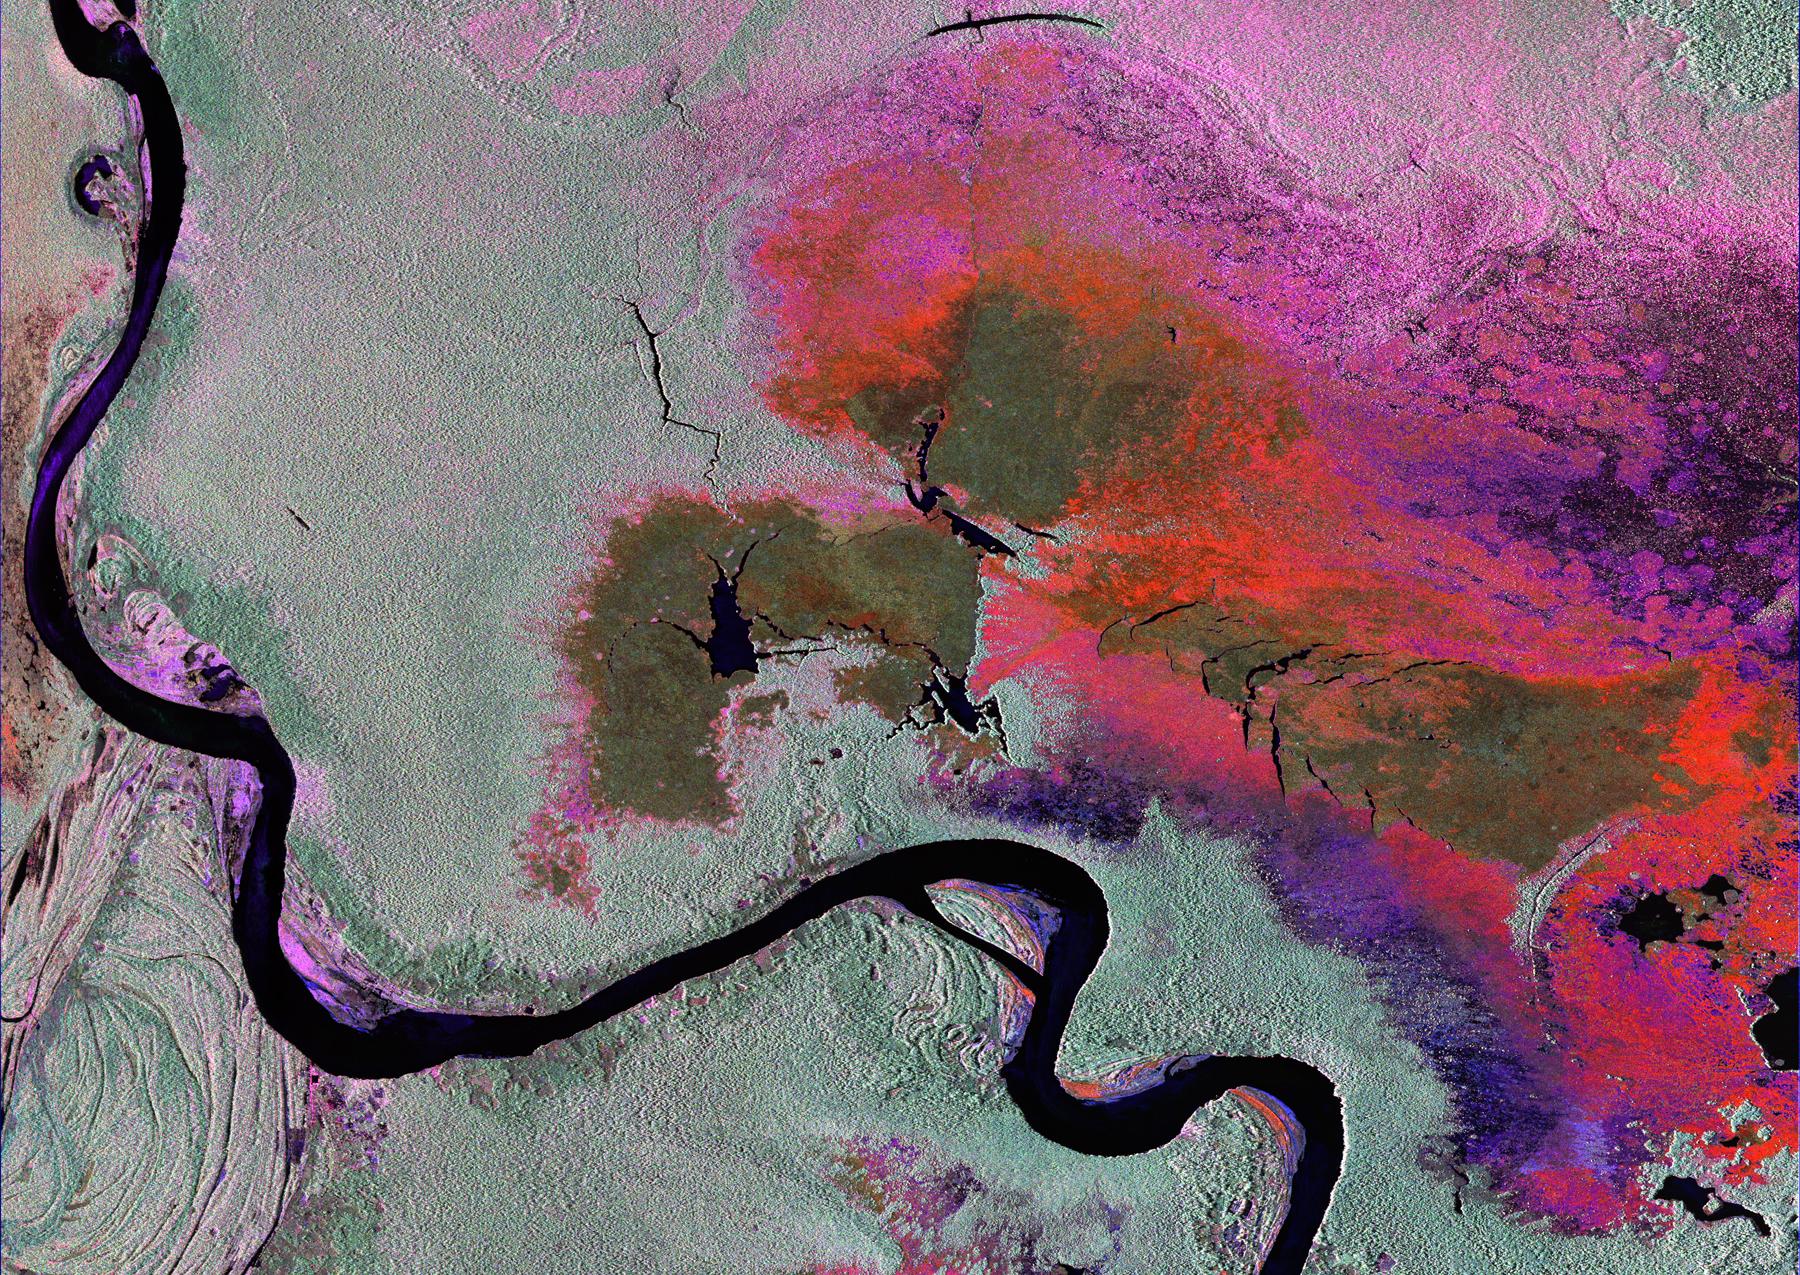 Radar Image of Amazonian Flooding